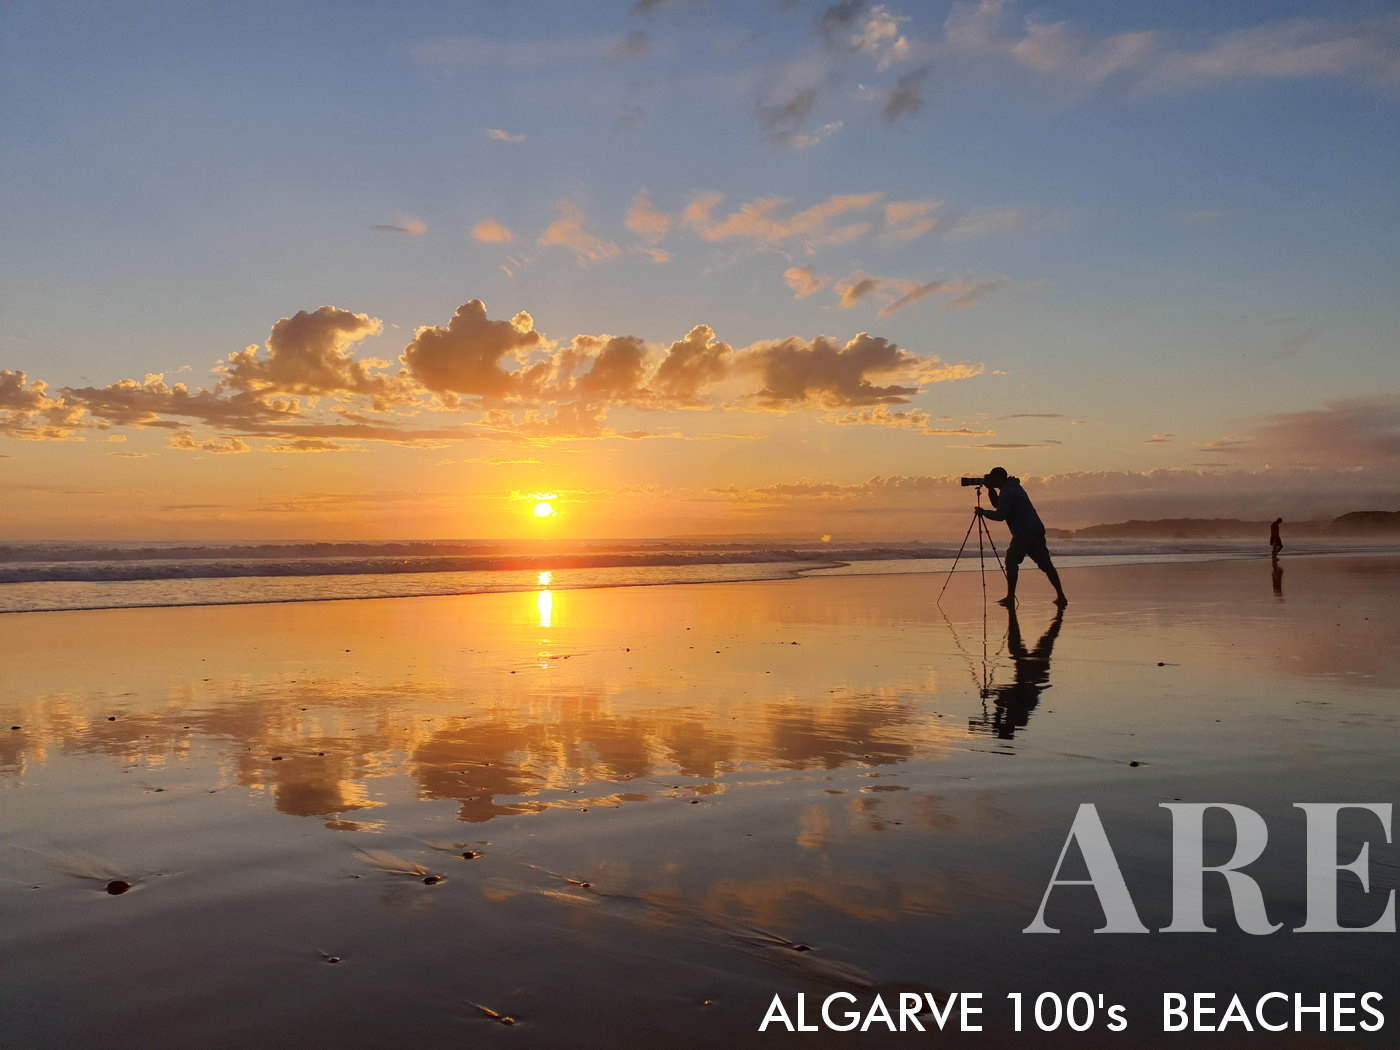 Fotografiando a los surfistas en la playa de Rocha, por José Féria, el fotógrafo detrás de todas las fotos de ARE